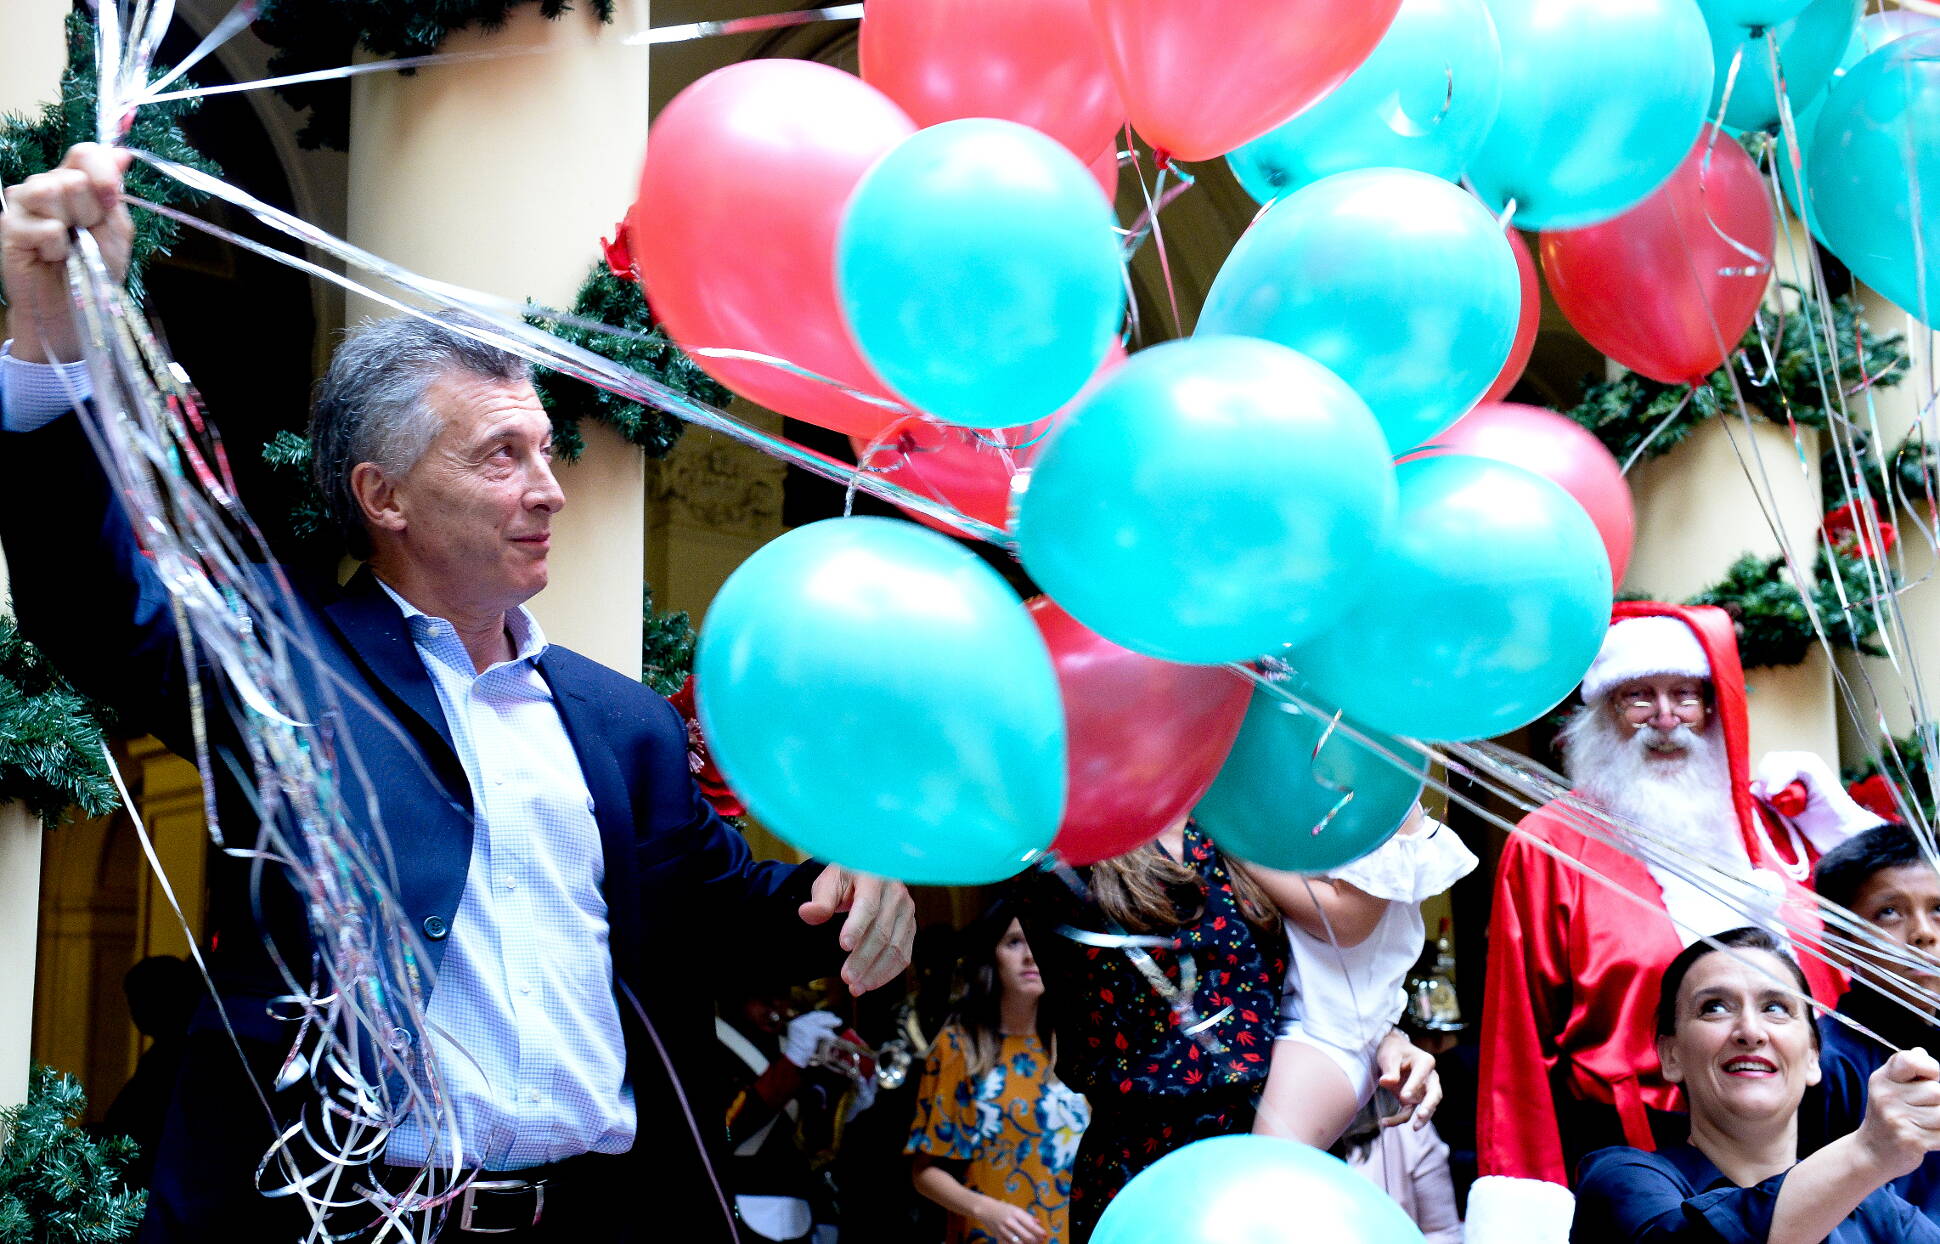 El Presidente participó de un brindis por las Fiestas junto a trabajadores de Casa Rosada